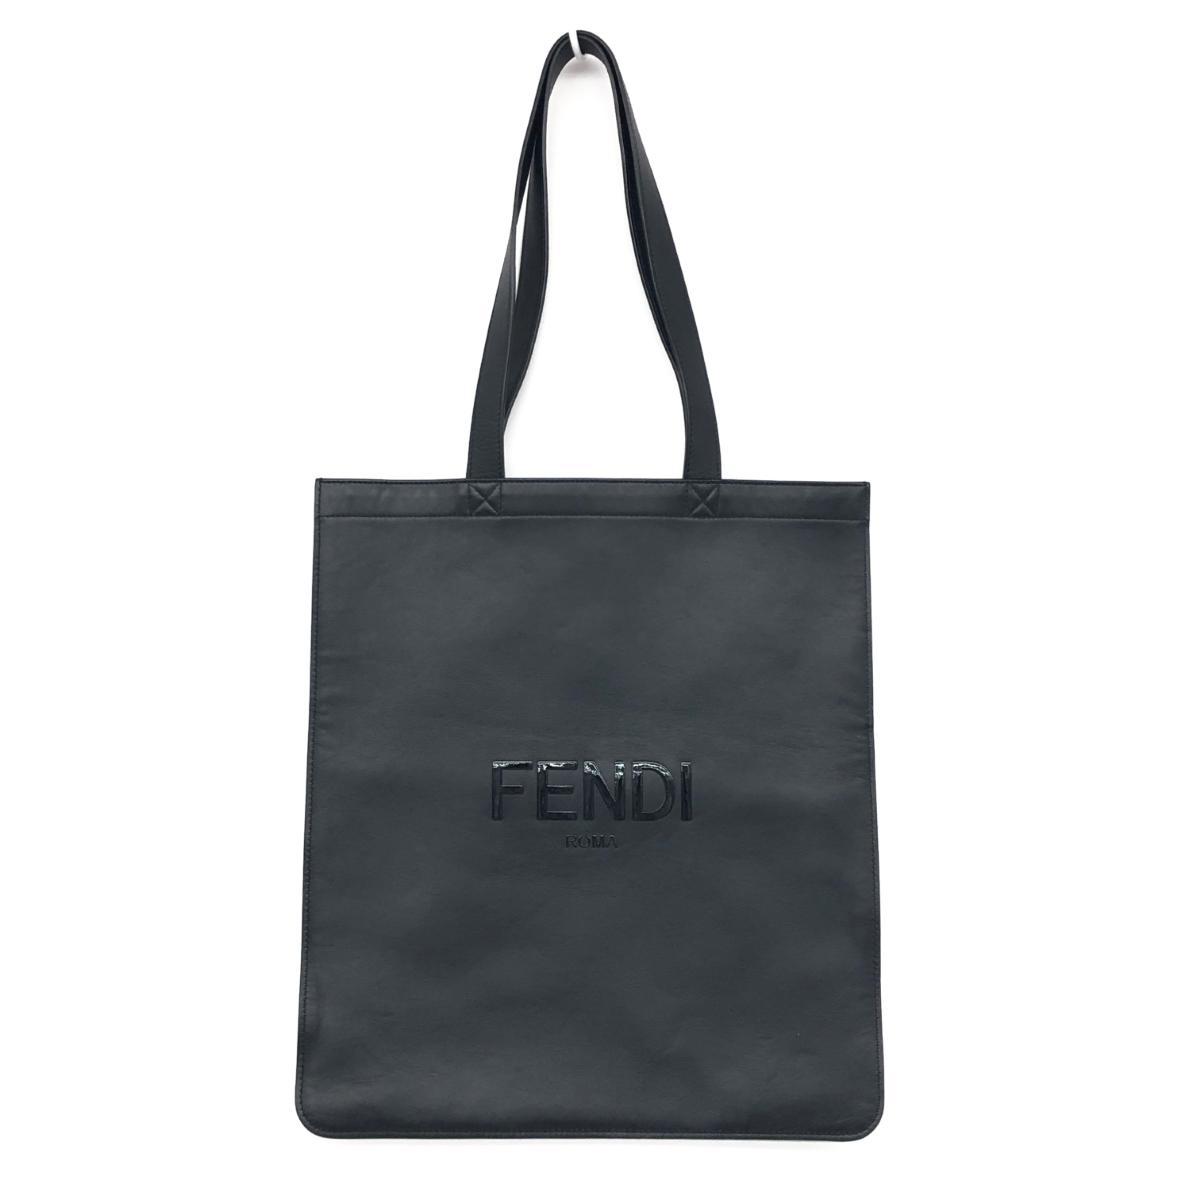 新品同様◆FENDI フェンディ フラットトートバッグ◆7VA538 ブラック レザー ショッピング ロゴ ユニセックス bag 鞄